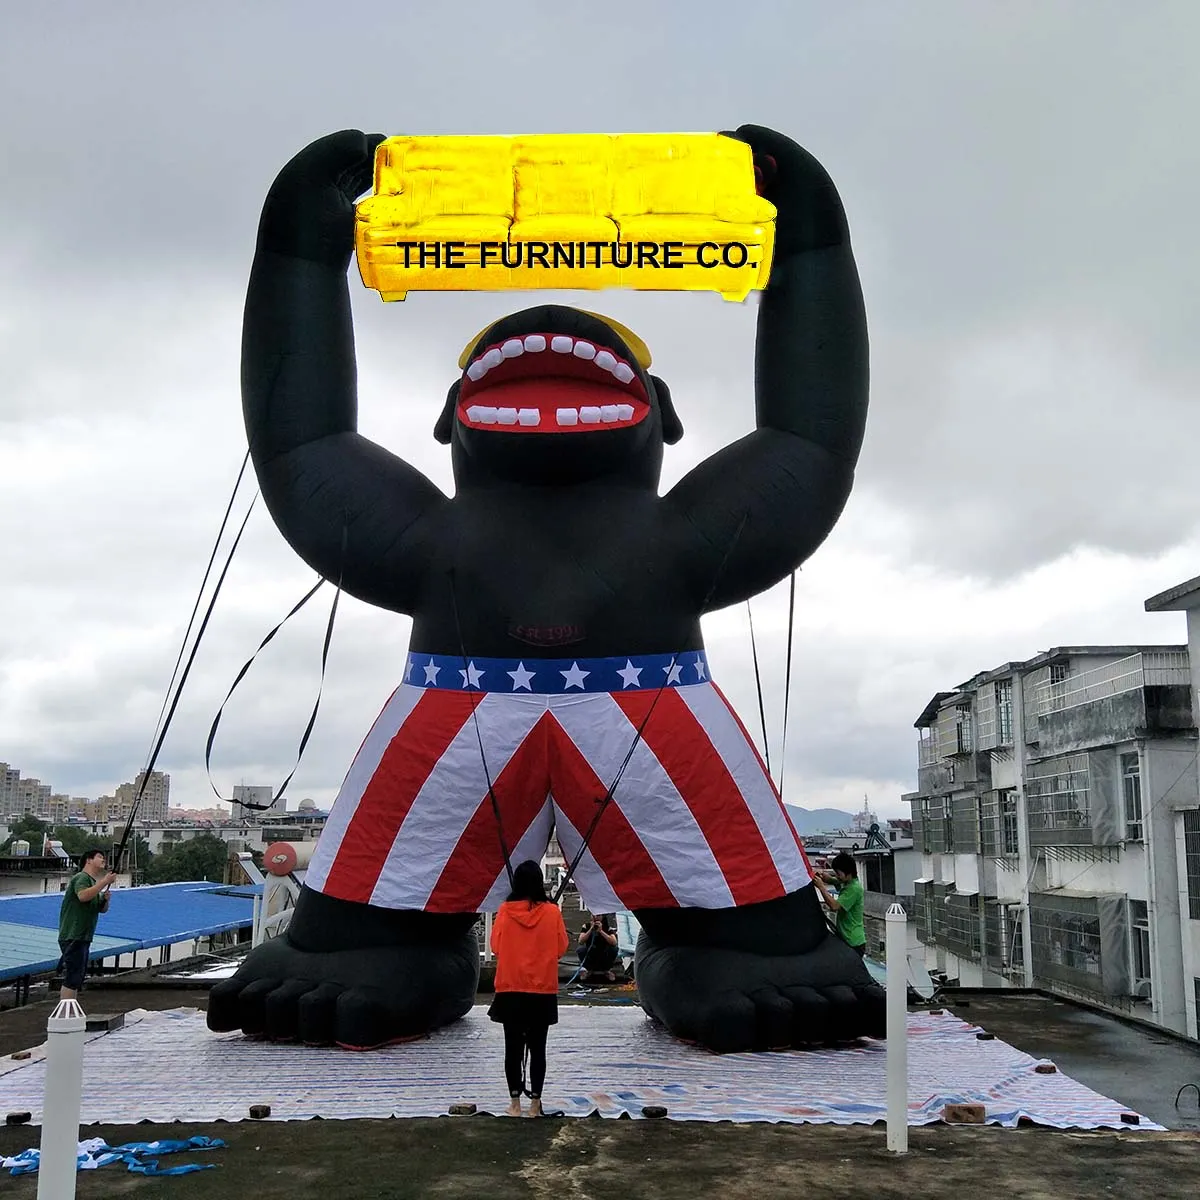 10m Altura amarela King Kong Inflatable Gorilla para venda Anúncio de móveis fabricados por Ace Air Art